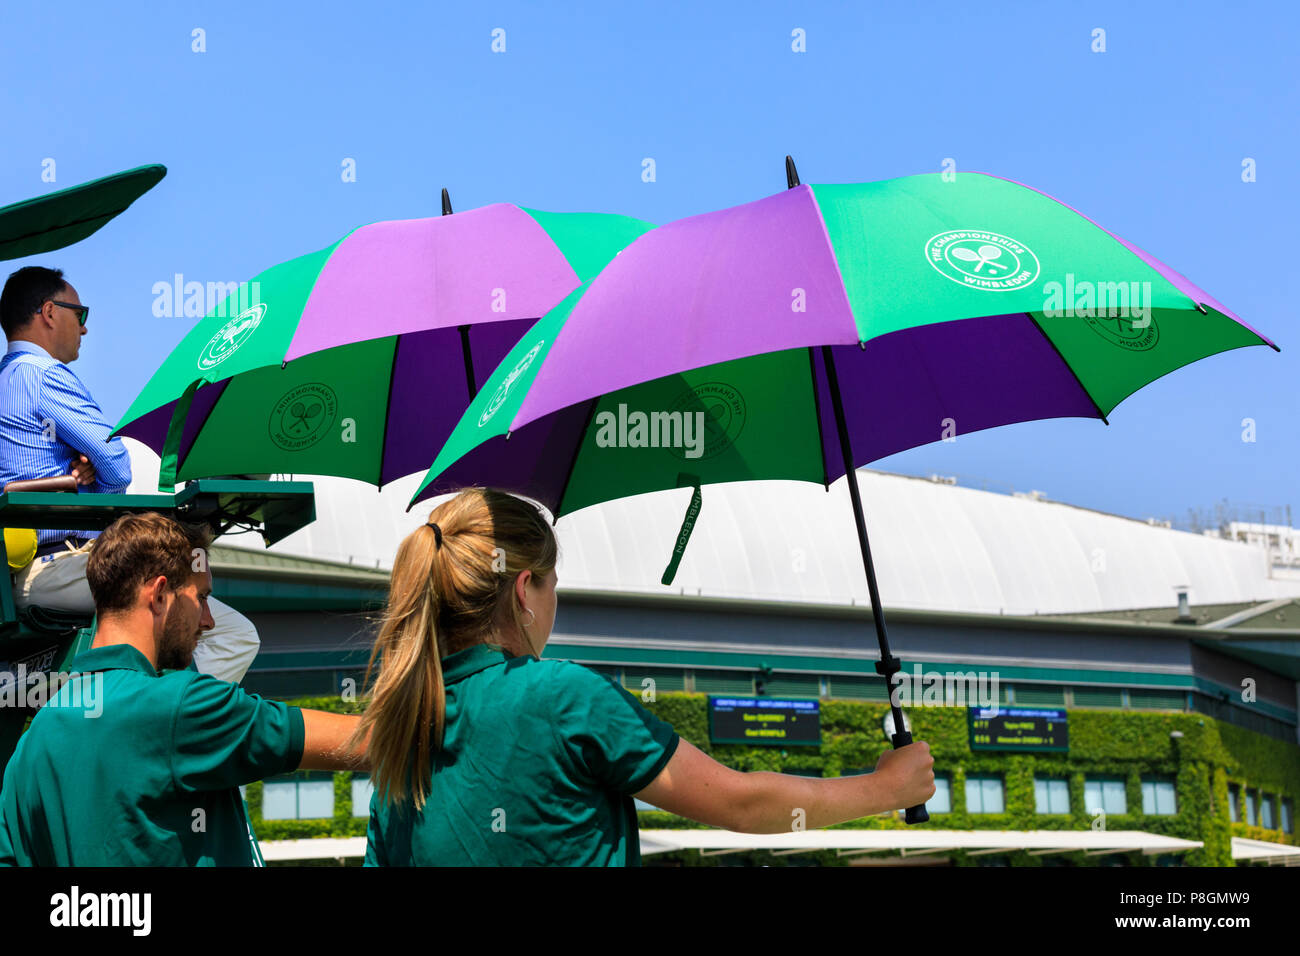 Corte di Wimbledon famigli ombrelli azienda al di sopra dei giocatori per ombra, tutti England Lawn Tennis Club Wimbledon, Regno Unito Foto Stock